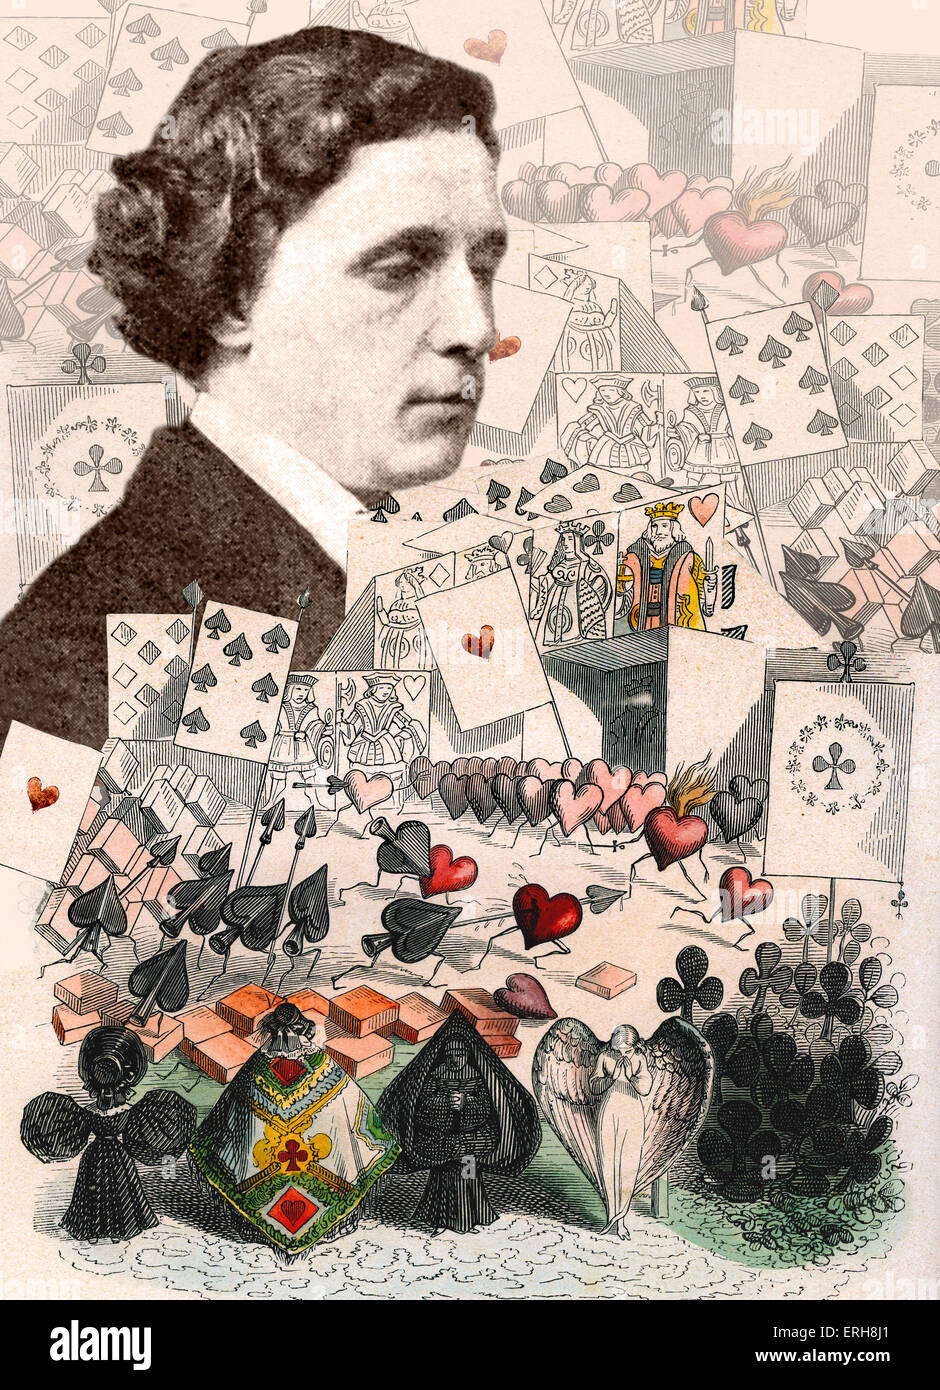 Lewis Carroll - collage de Alice in Wonderland ilustraciones con retrato de 28 de marzo de 1863. LC: Nació Charles Lutwidge Foto de stock